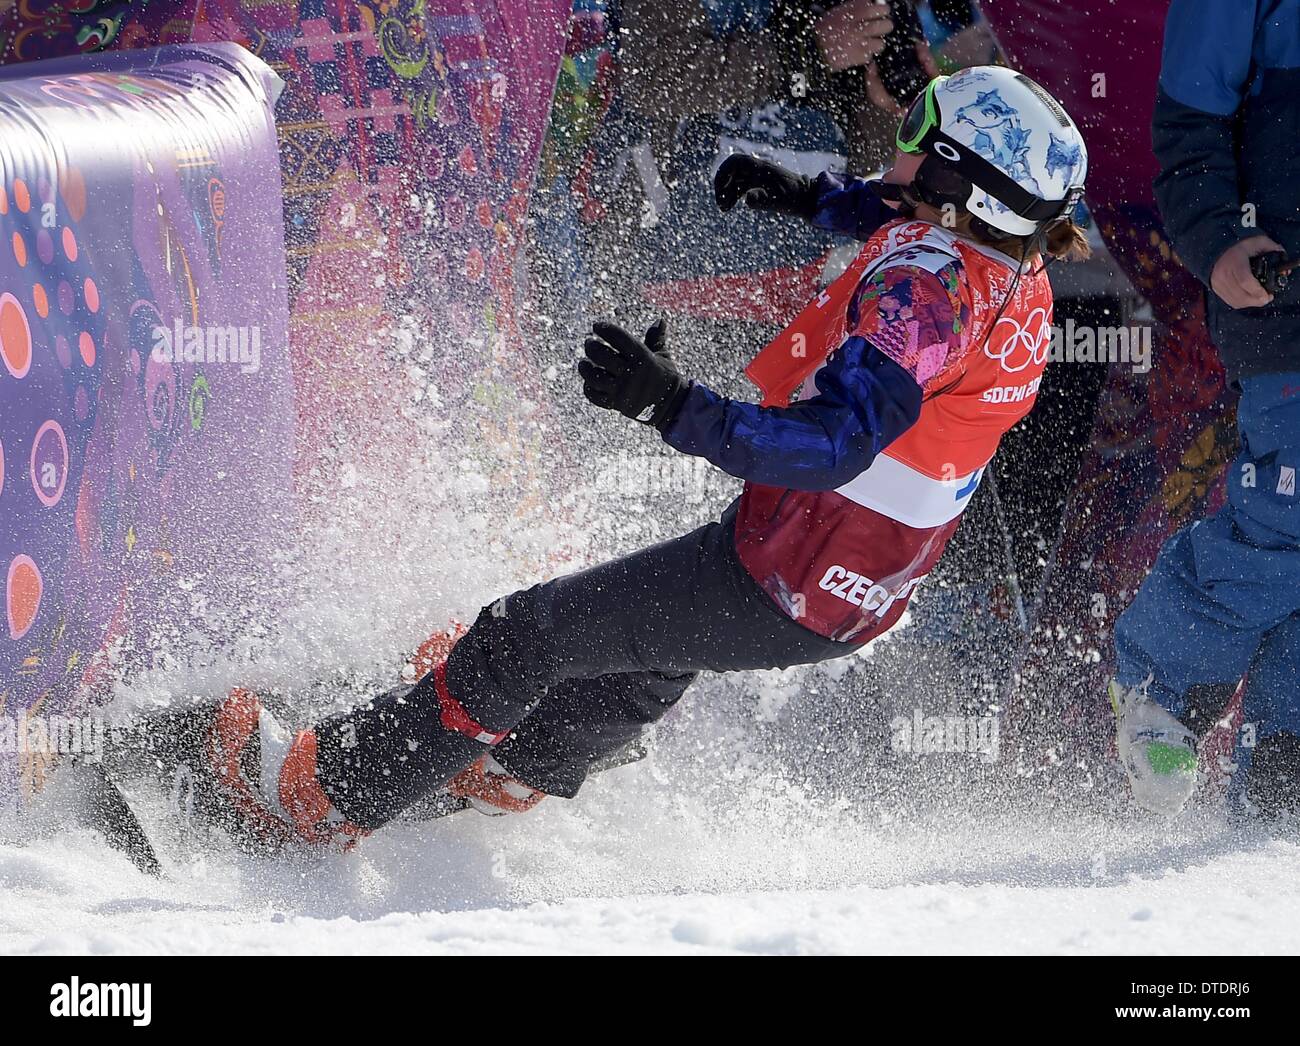 Eva Samkova (CZE) célèbre alors qu'elle se plante dans la porte de sortie après avoir remporté l'or. Snowbboard Womens Cross - Rosa Khutor Extreme Park - Sotchi - Russie - 16/02/2014 Banque D'Images